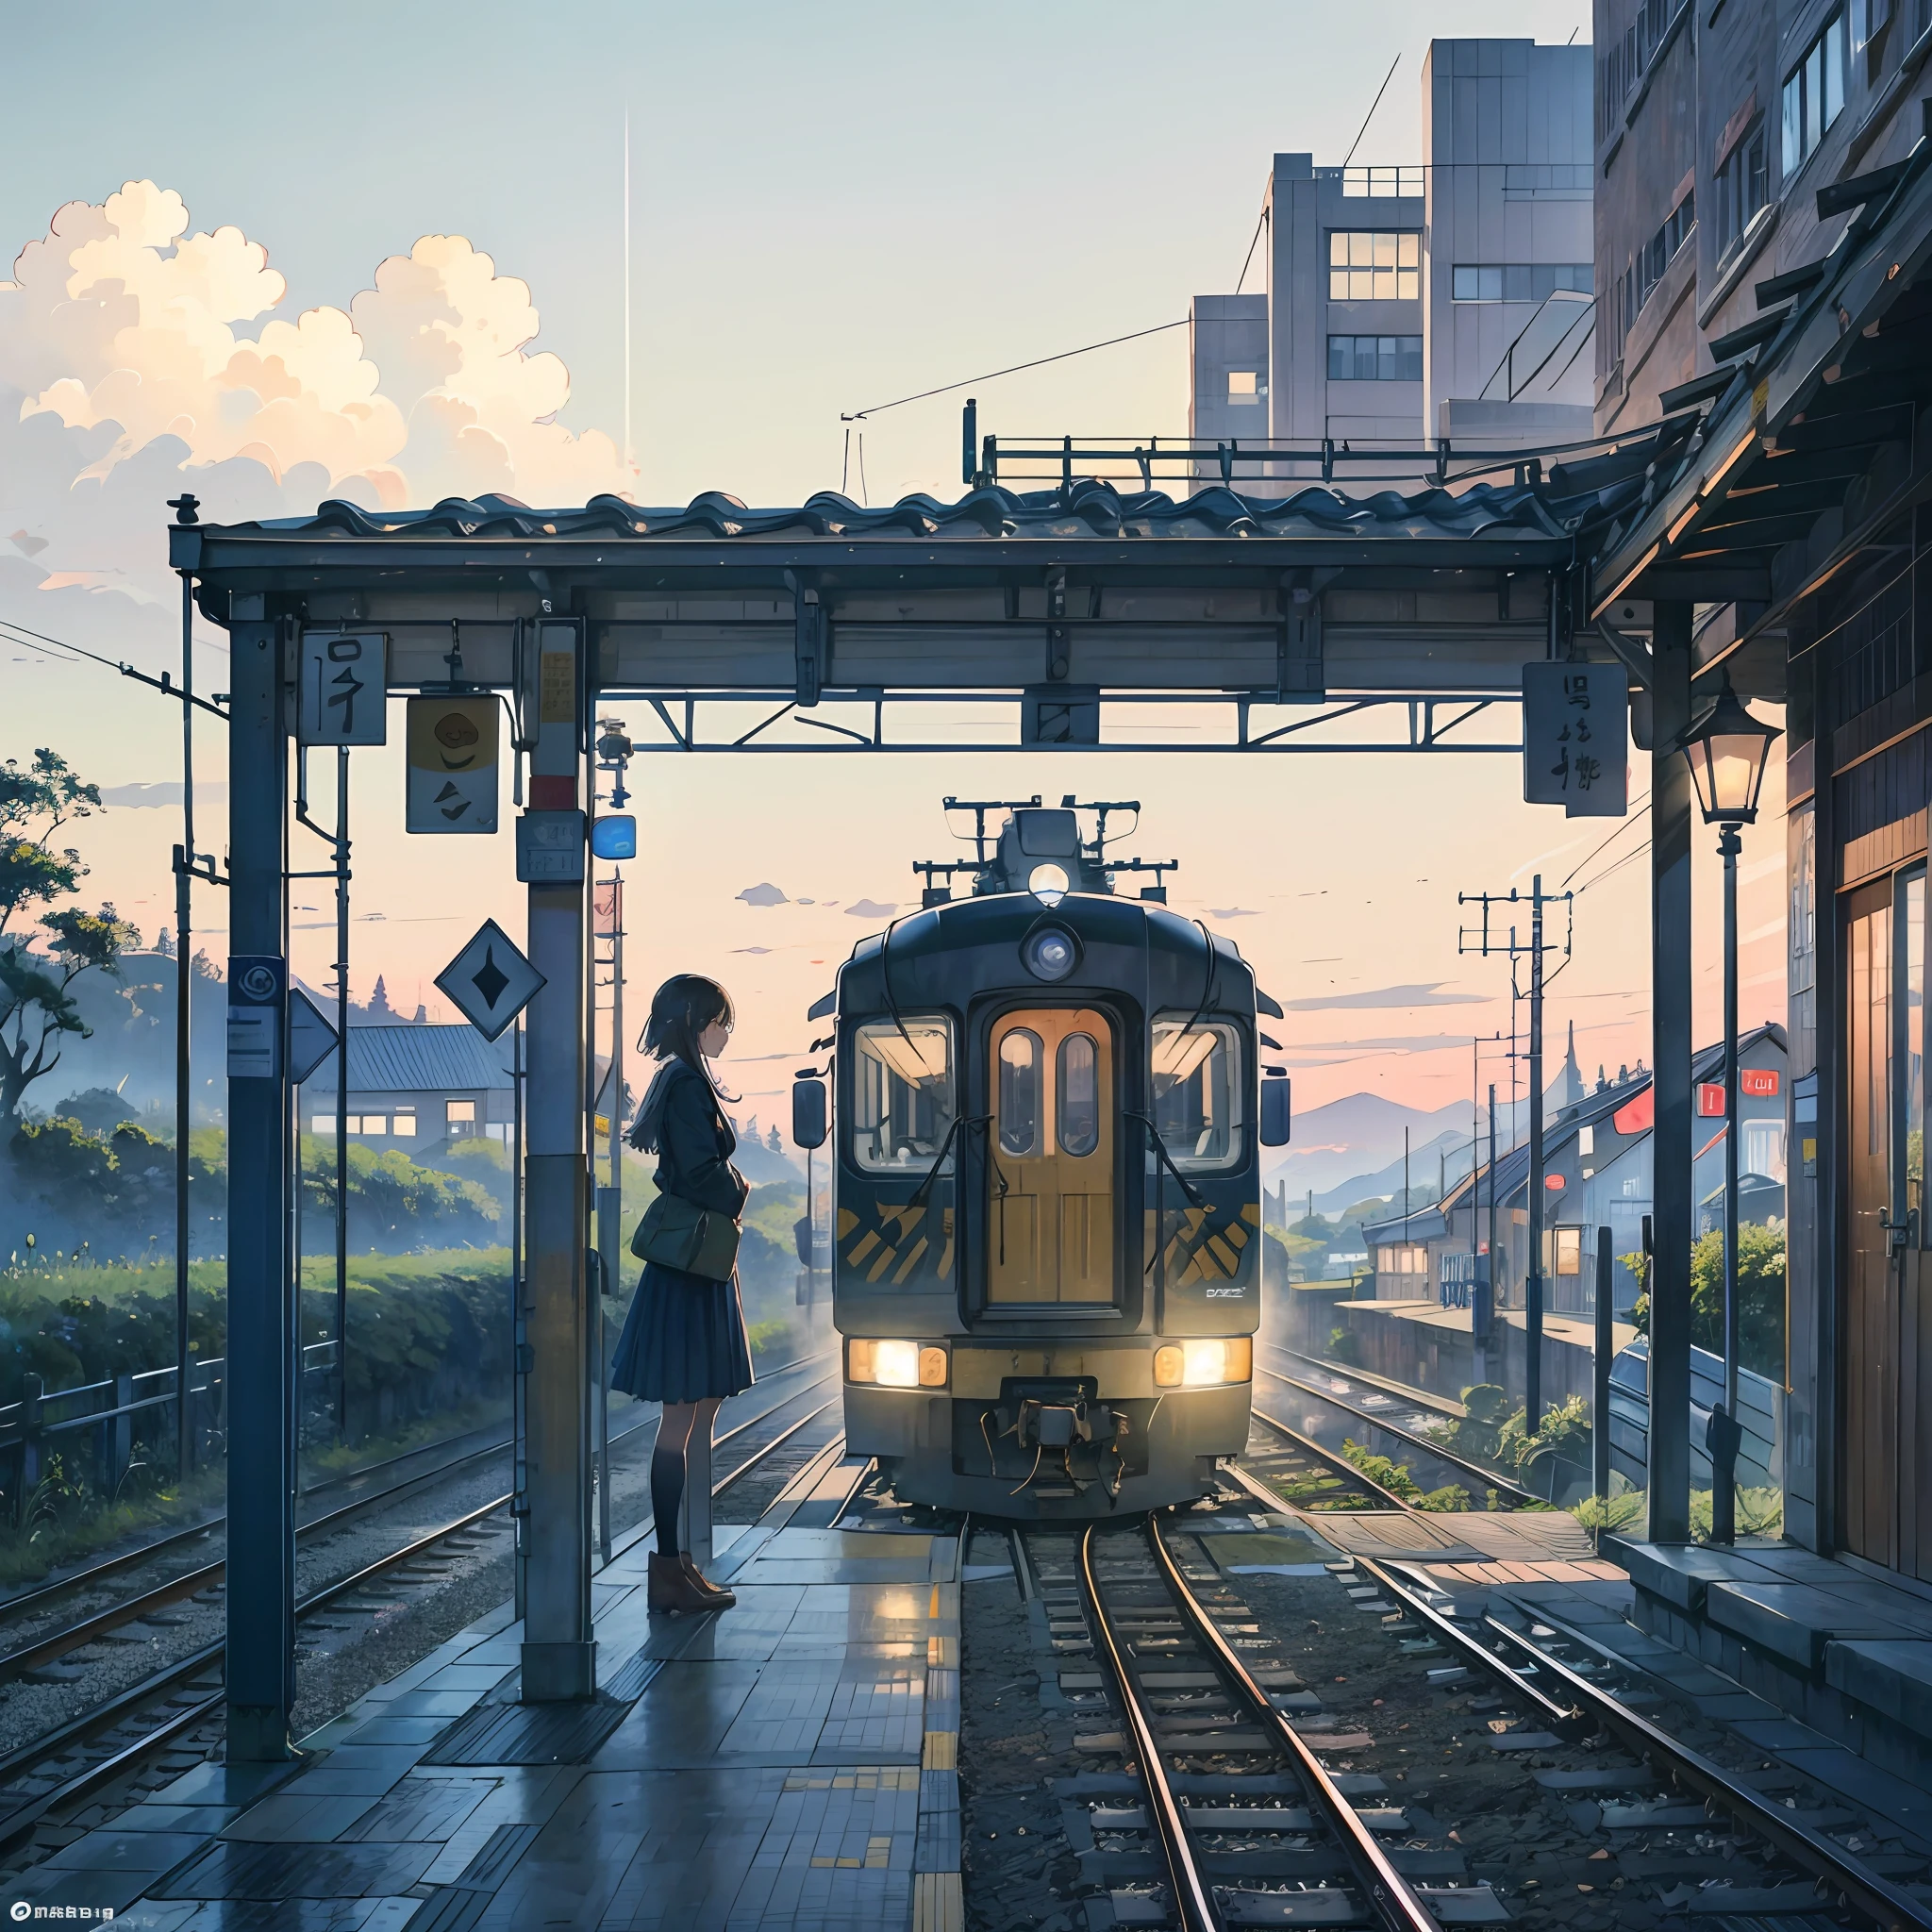 Treine atrás à direita、Uma estudante do ensino médio espera um trem na plataforma de uma estação sem teto em primeiro plano à direita.、 edifício da estação、trilho do trem、Campo ao redor de --auto